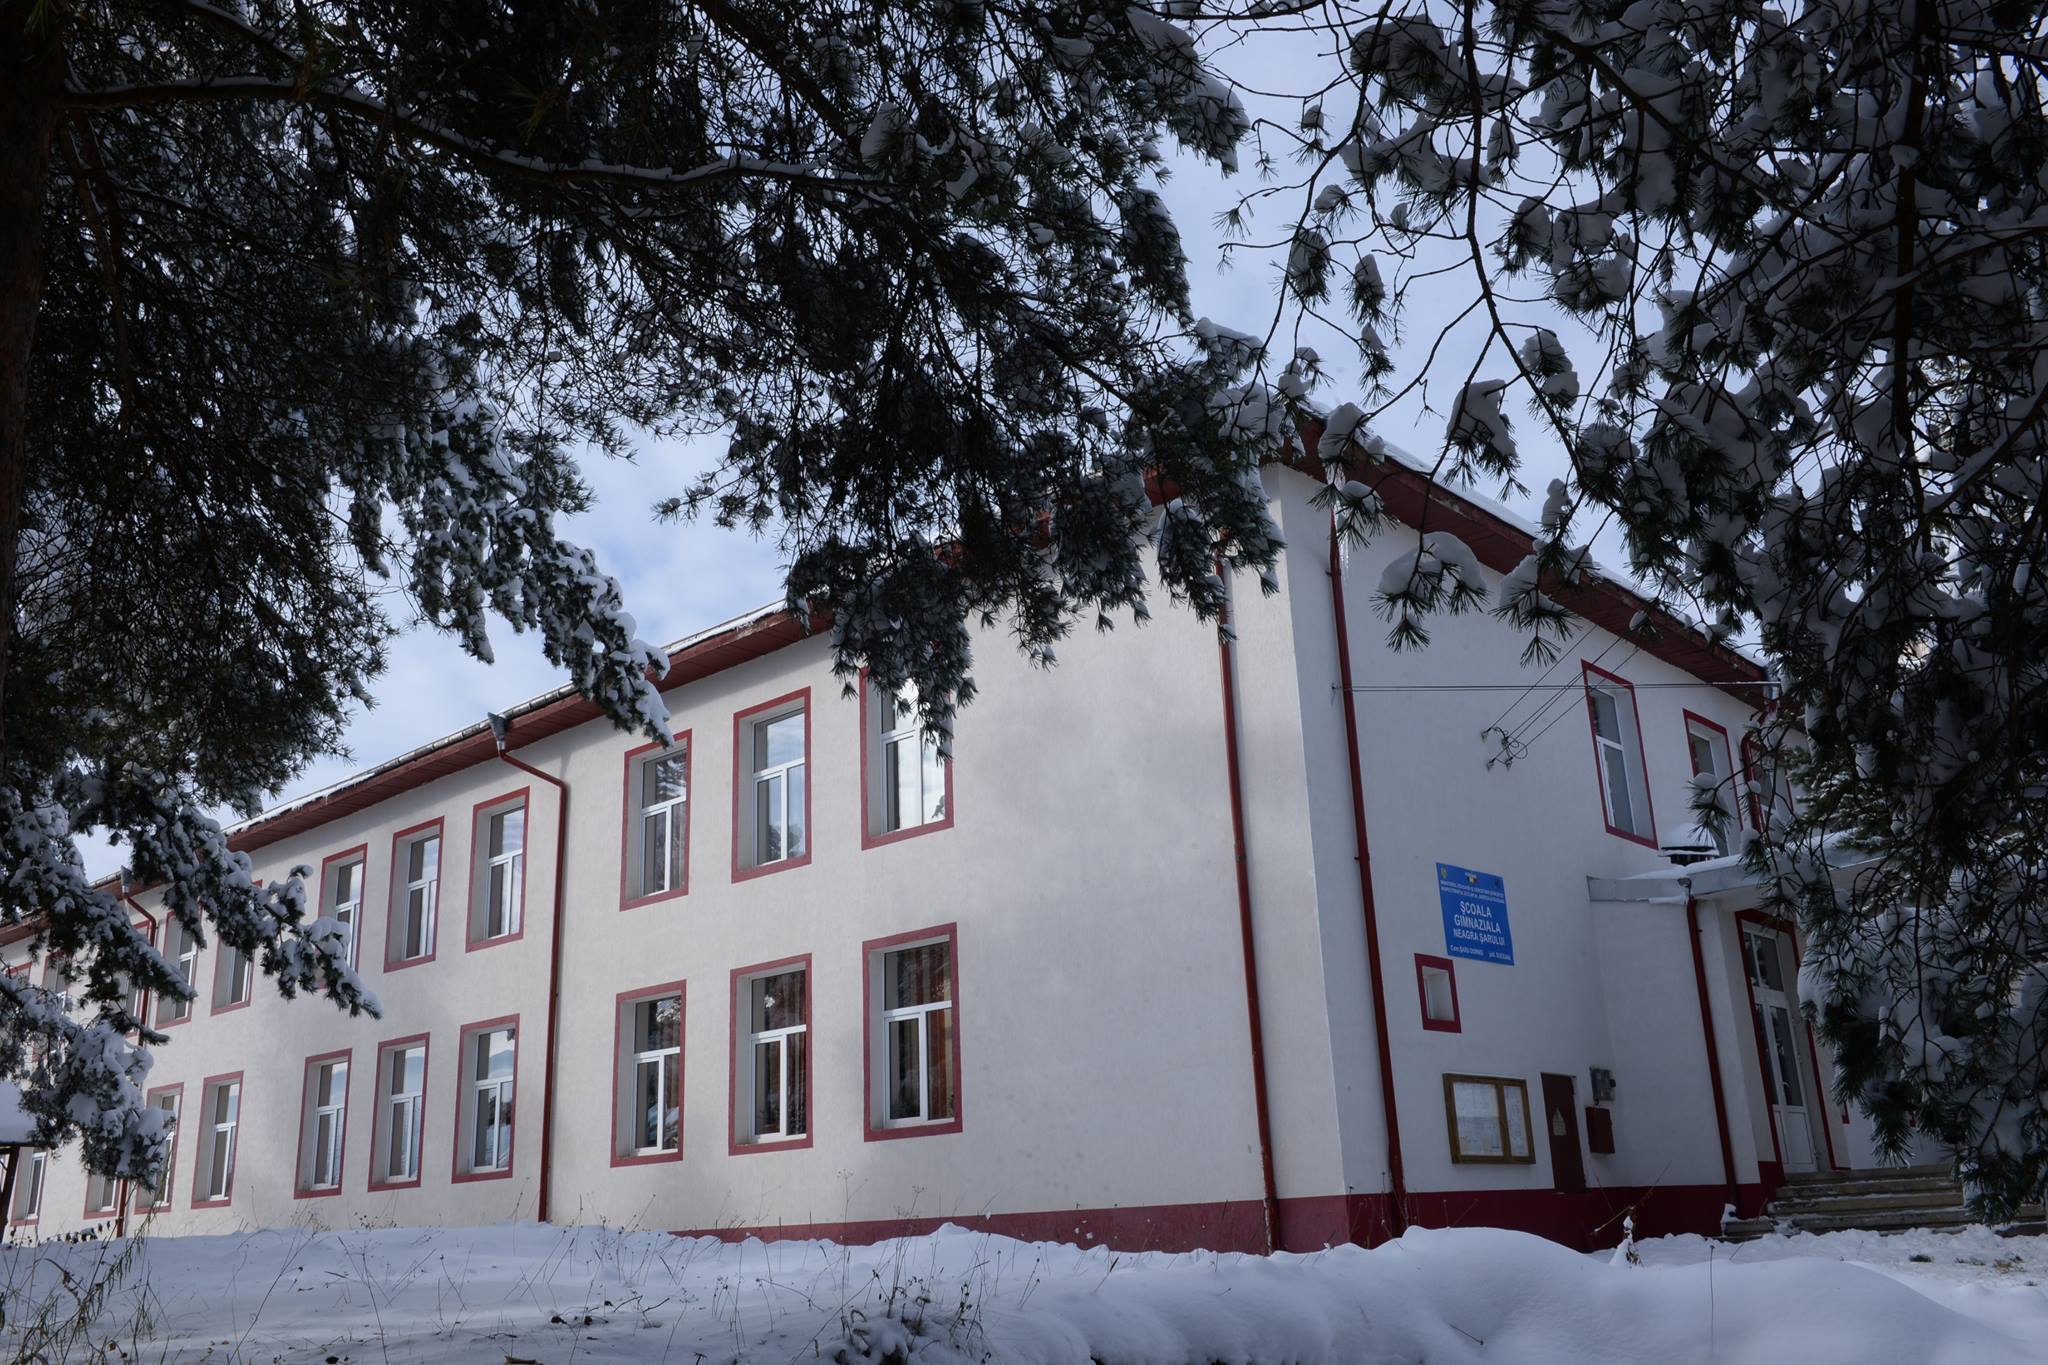 Școala Gimnaziala din Neagra Șarului, Suceava